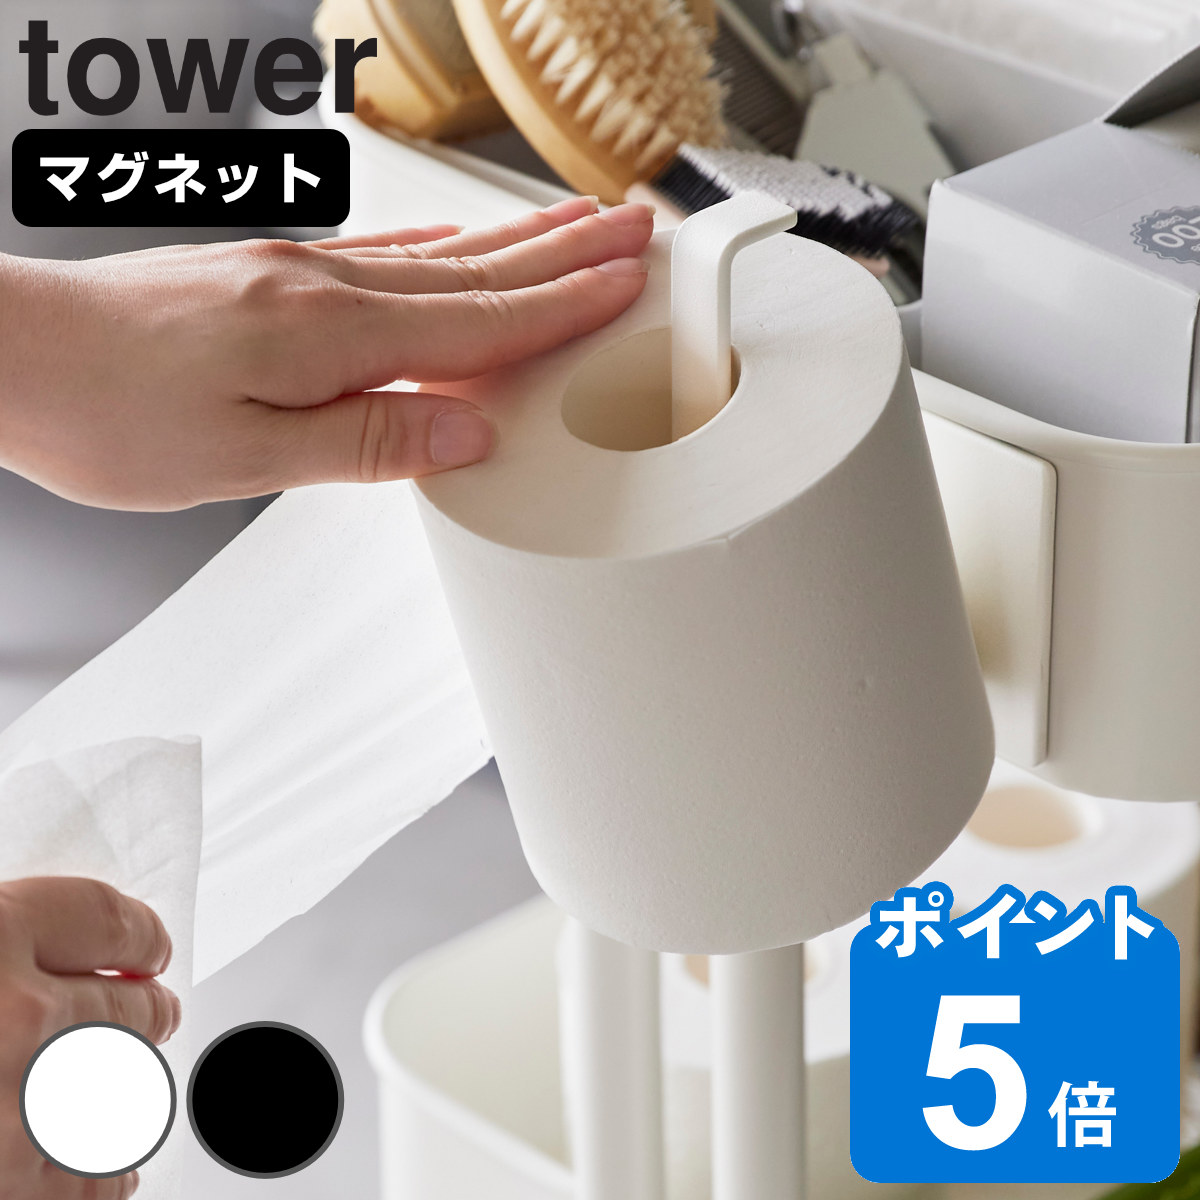 山崎実業 tower マグネットトイレットペーパーホルダー タワー